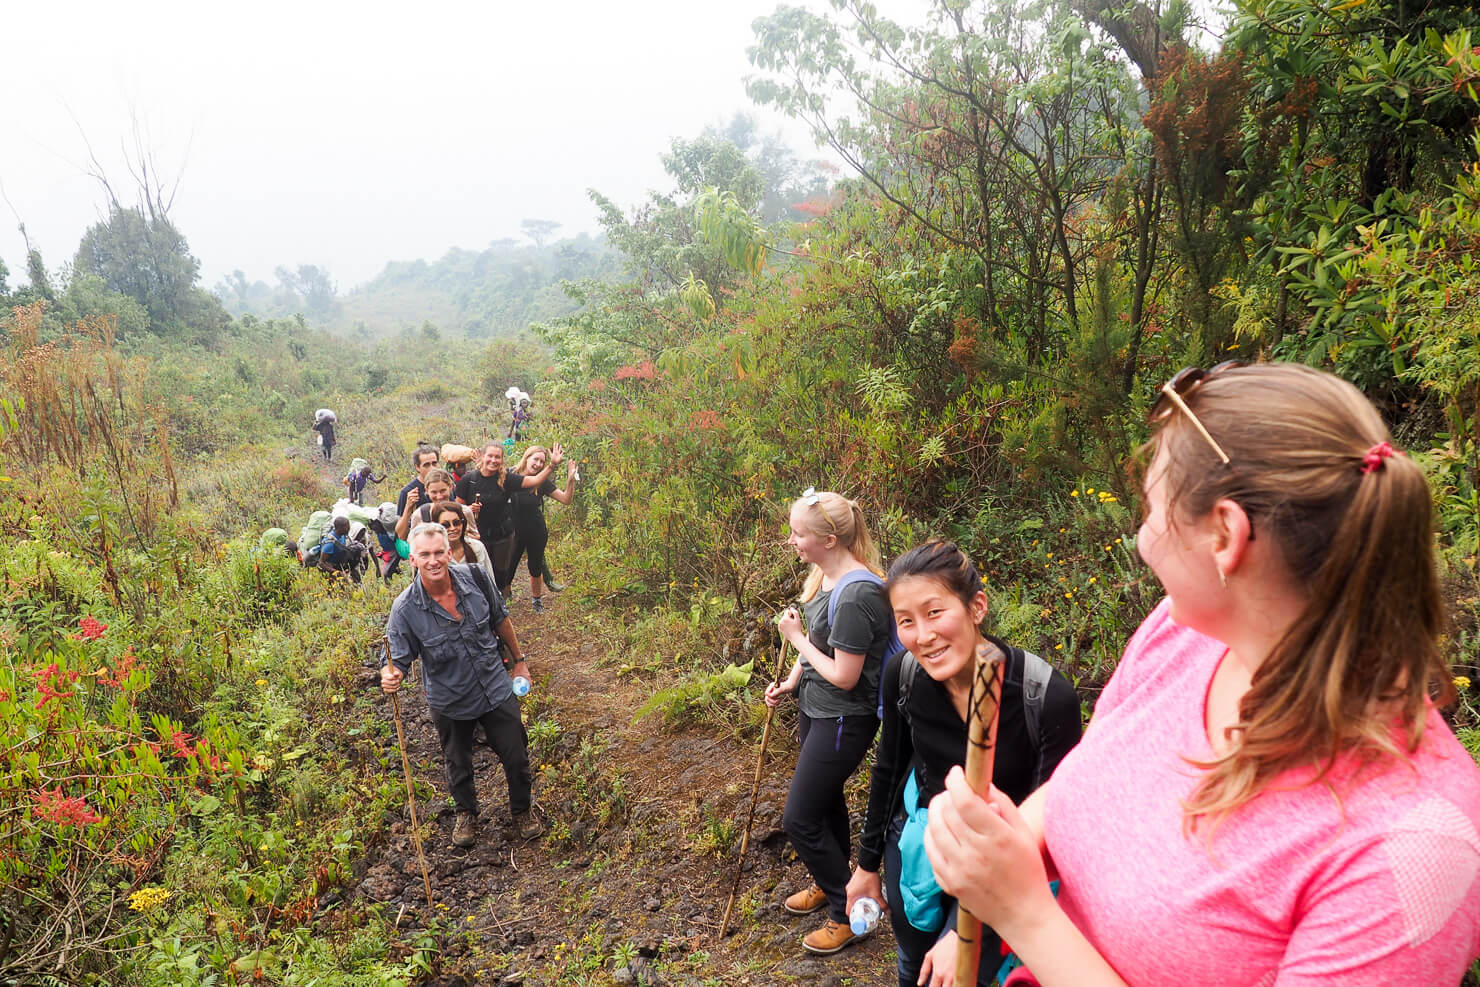 Climbing Mount Nyiragongo in the Democratic Republic of the Congo (DRC)